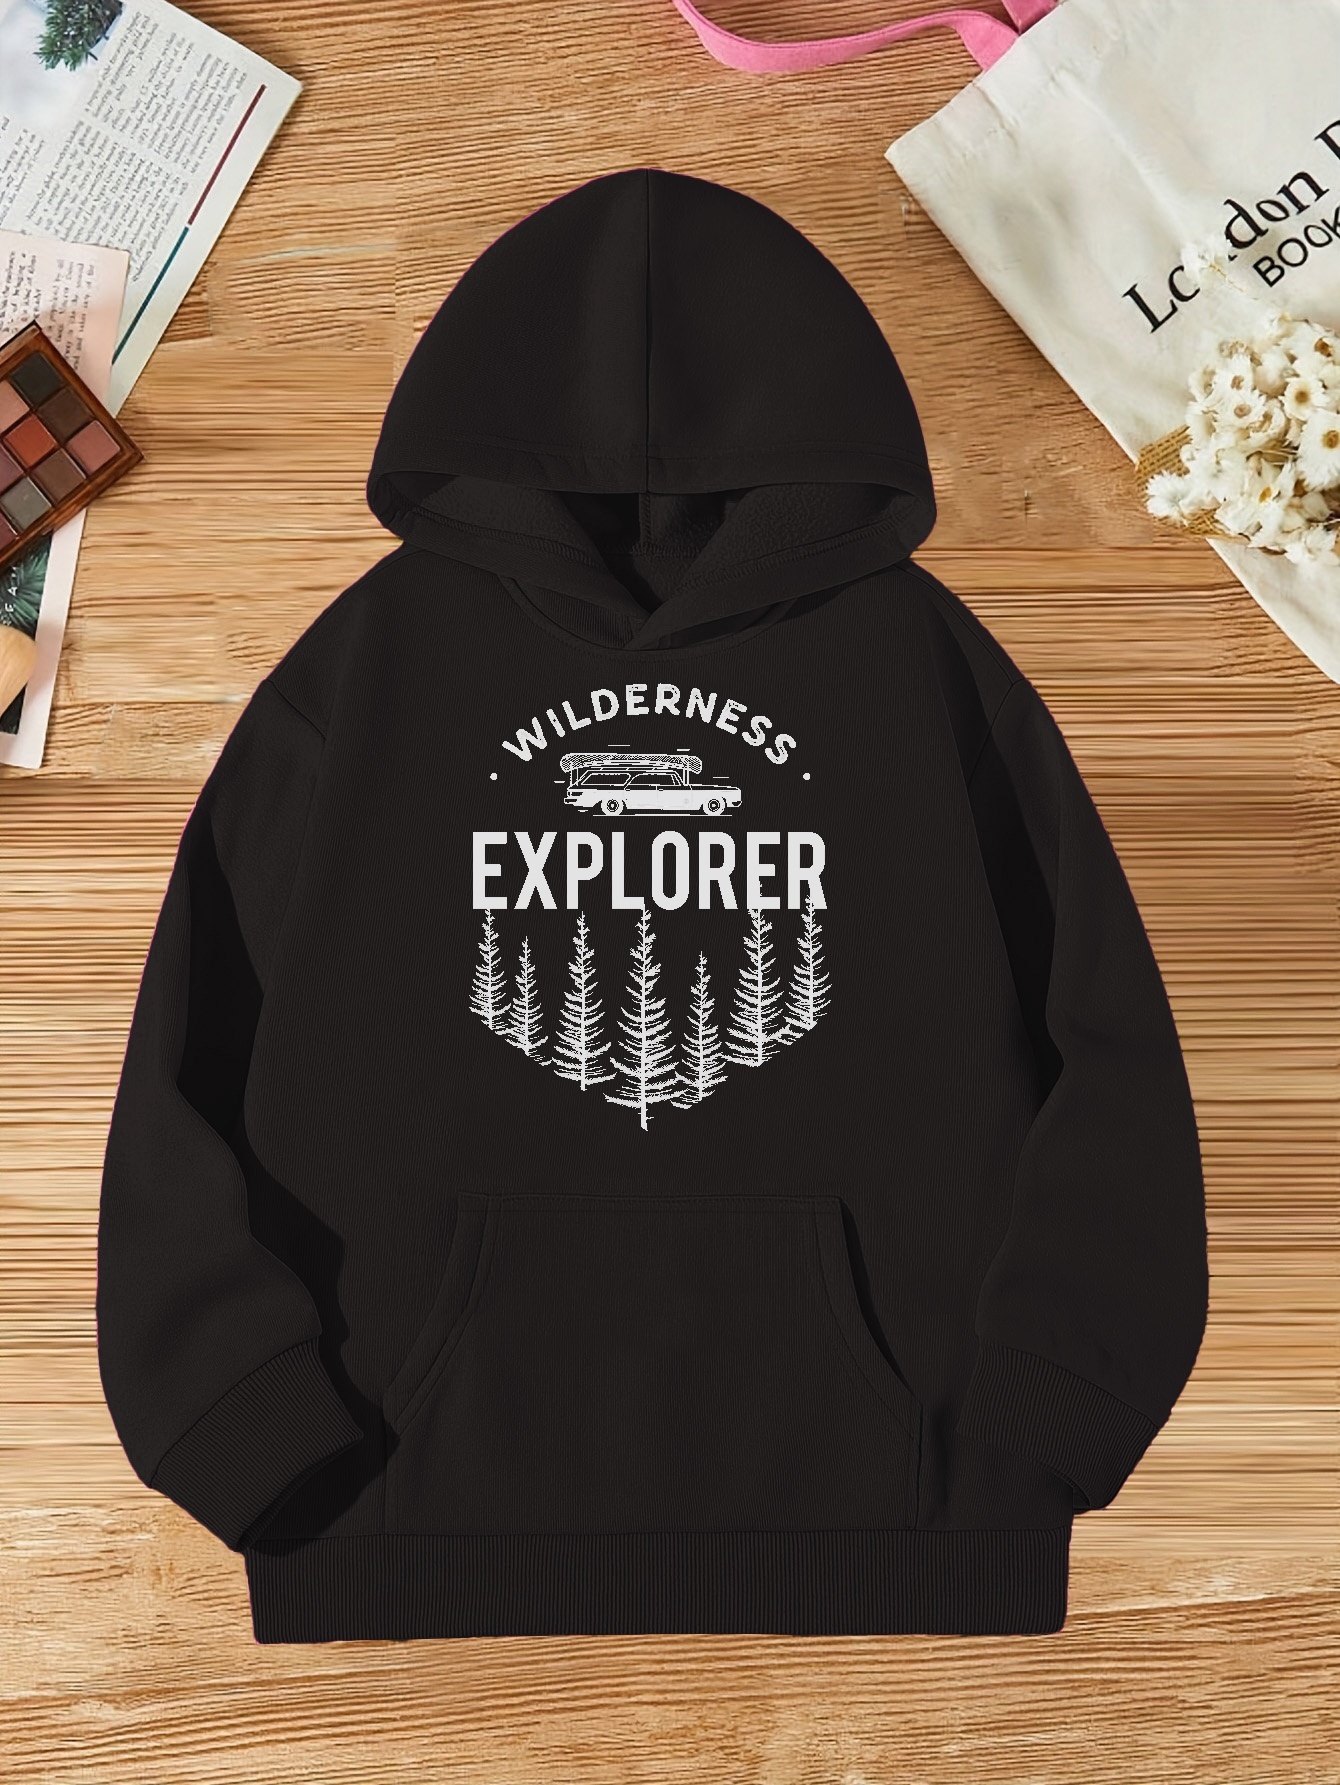 Explorer Zip Up Jacket - Black  Women's Sweaters + Hoodies